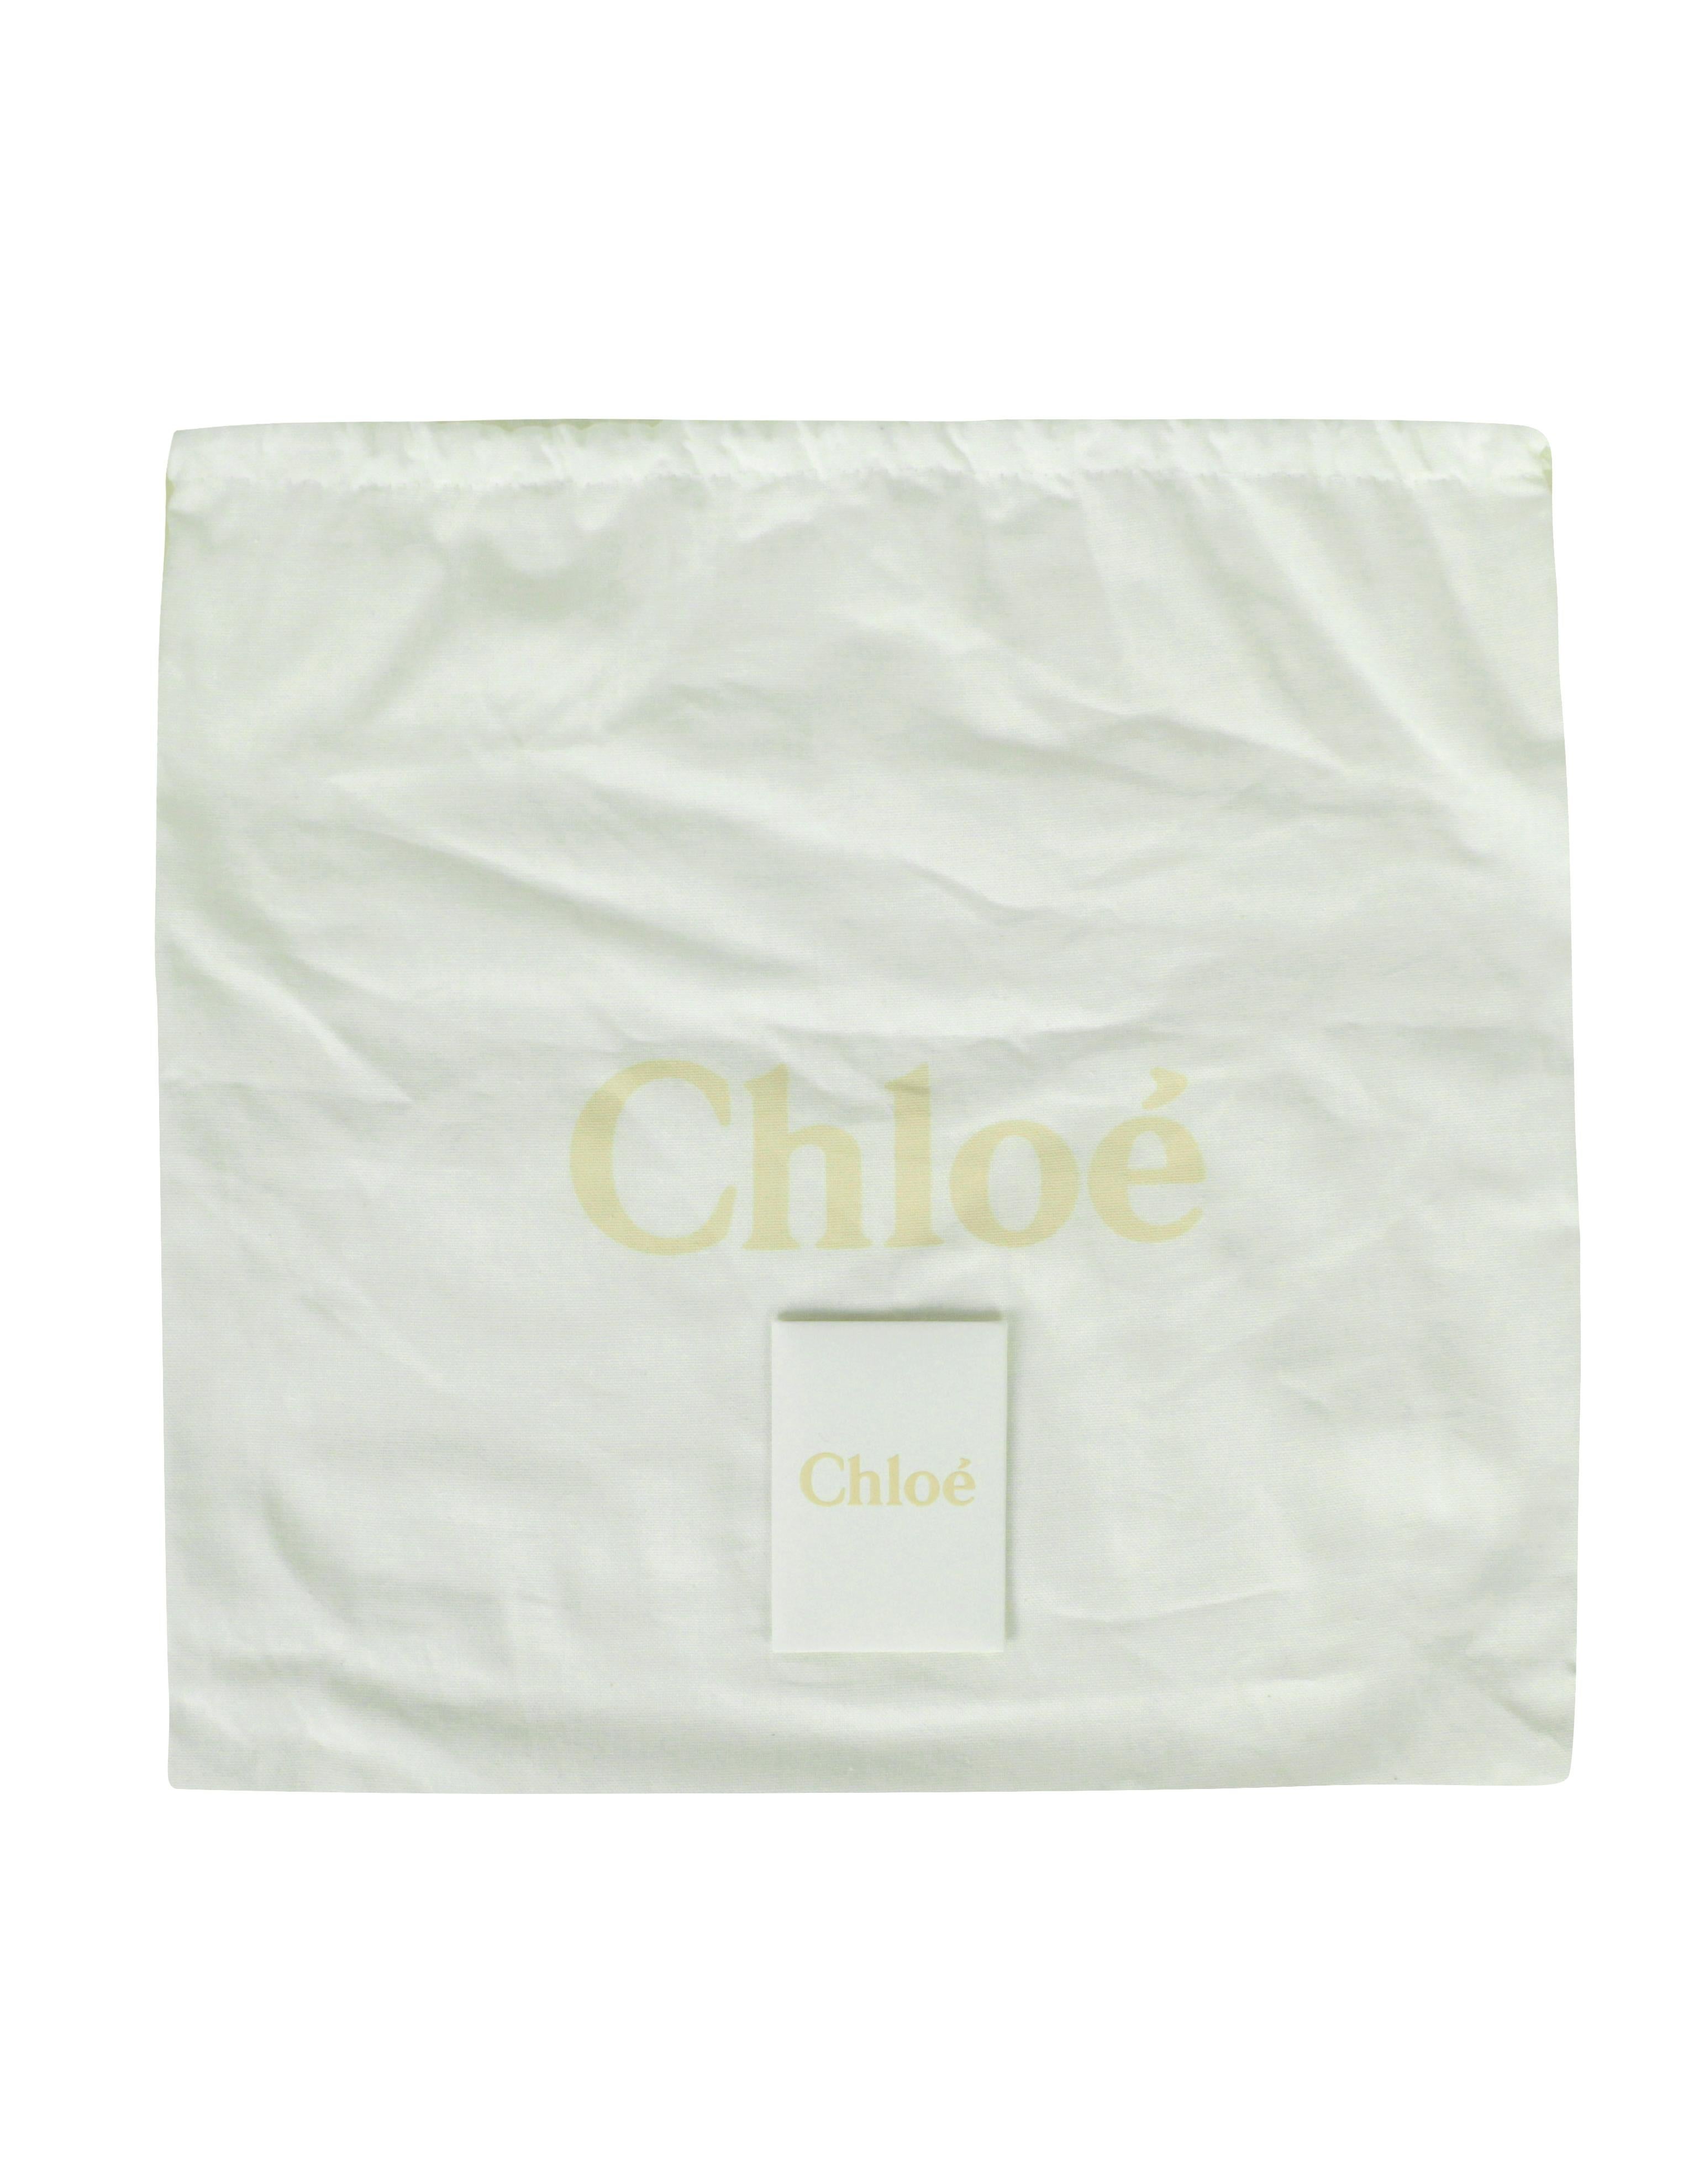 Chloe Soft Tan Leather Medium Marcie Satchel Crossbody Bag 6